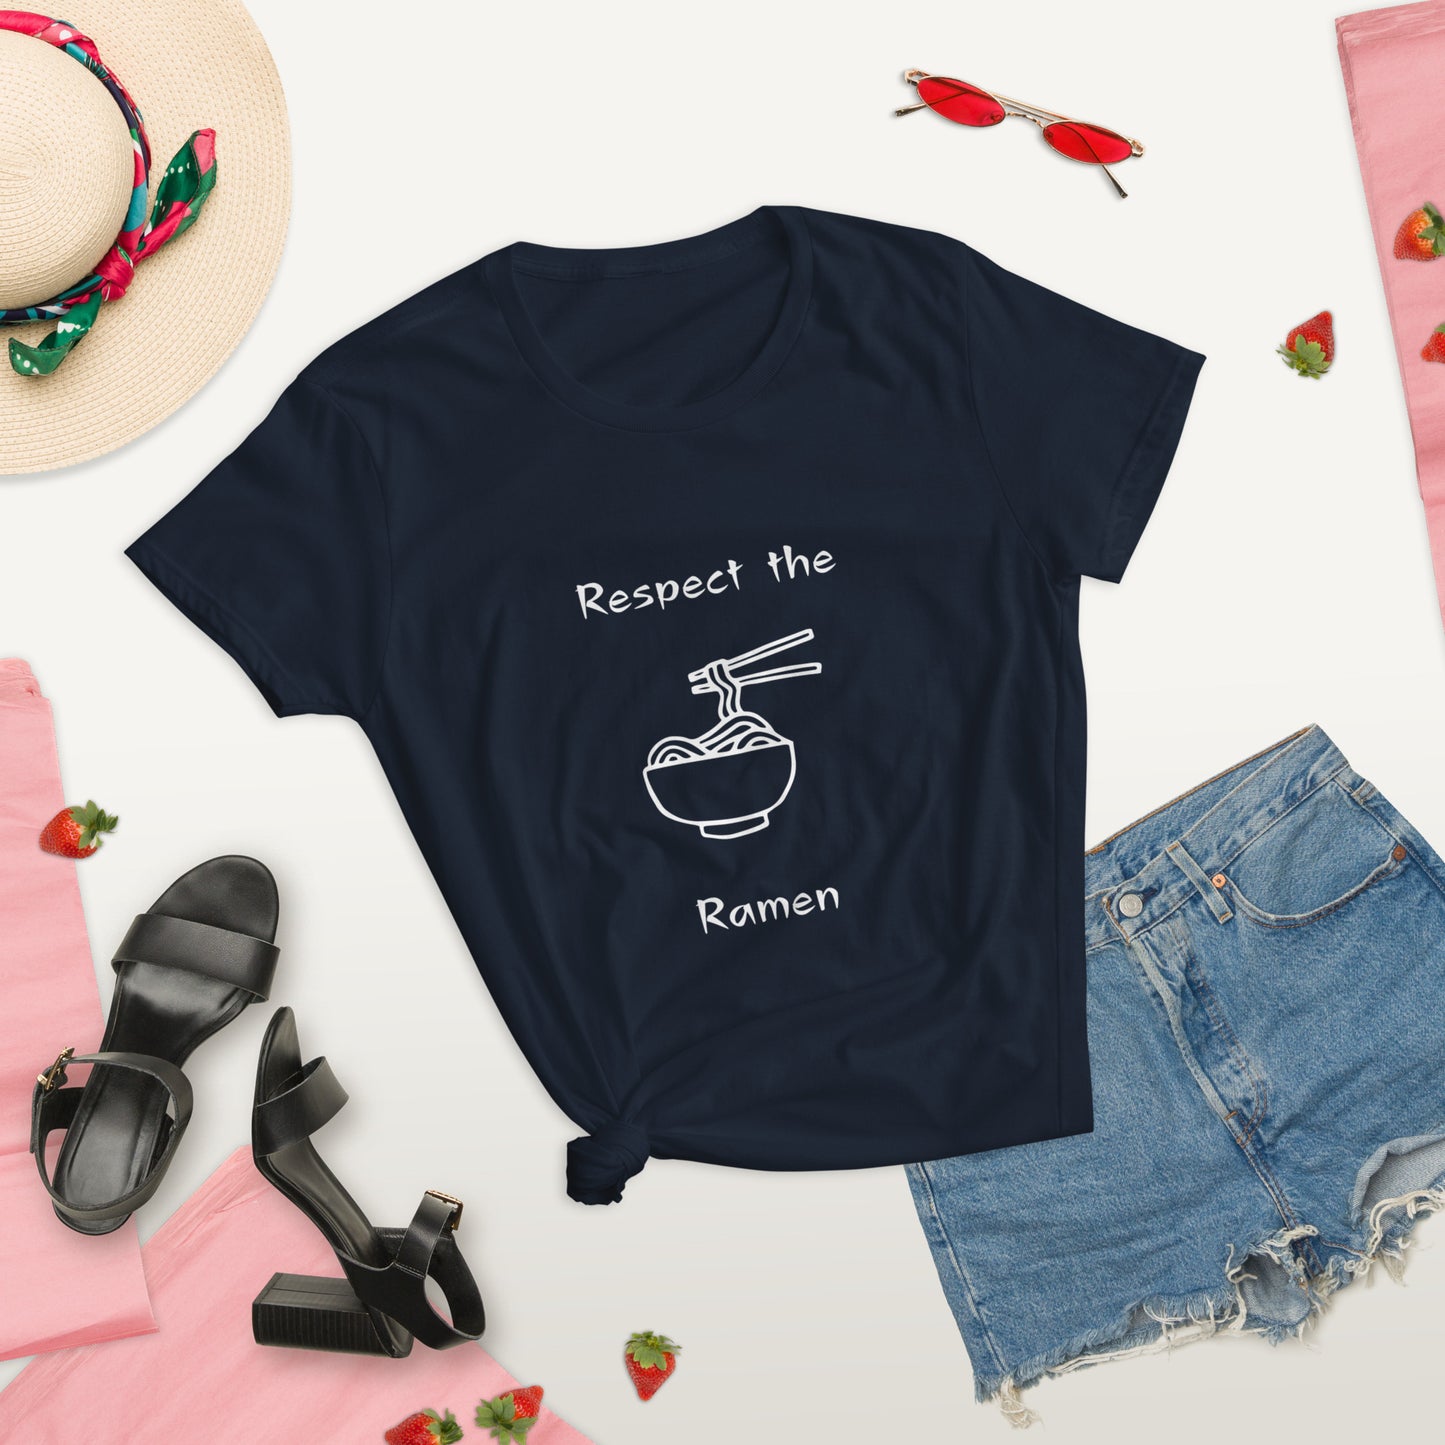 Respect the Ramen - Women's Fitted Short Sleeve T-Shirt